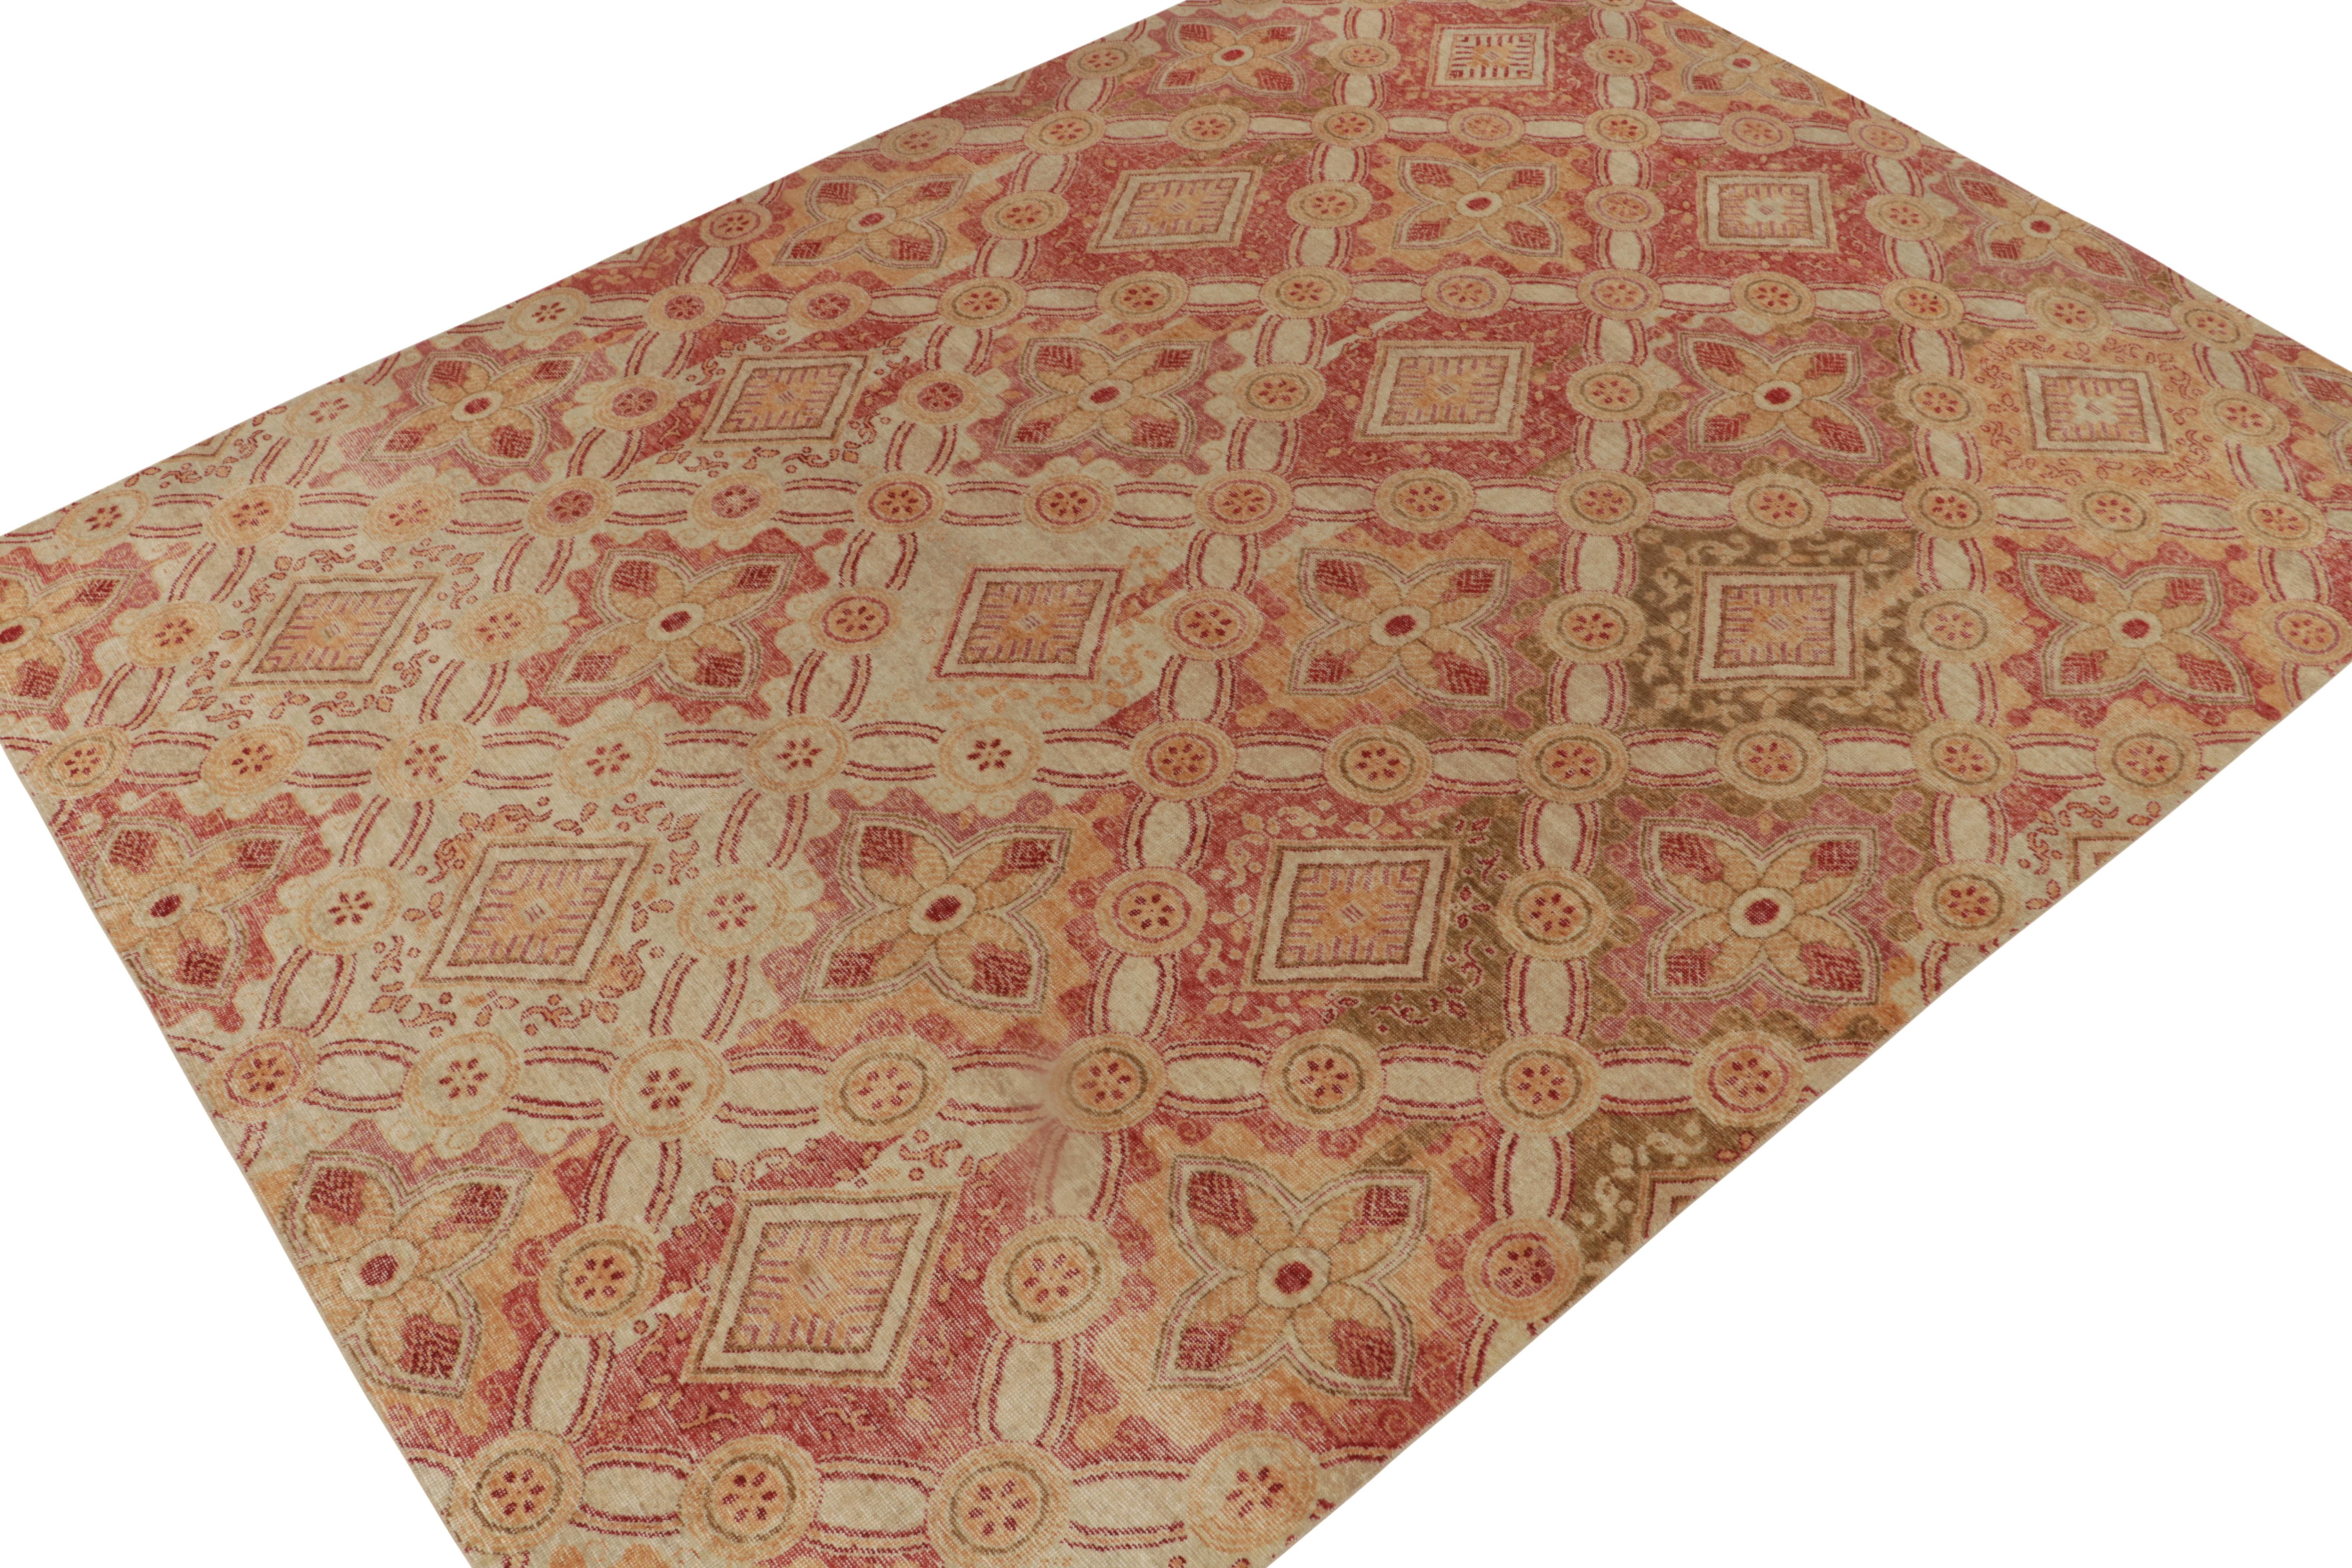 Issu de la Collection Homage de Rug & Kilim, ce tapis en laine nouée à la main de 10x14 s'inspire des sensibilités européennes les plus reverdies. 

Sur le Design/One : La vision s'épanouit avec des motifs floraux en treillis dans des tons rouge, or